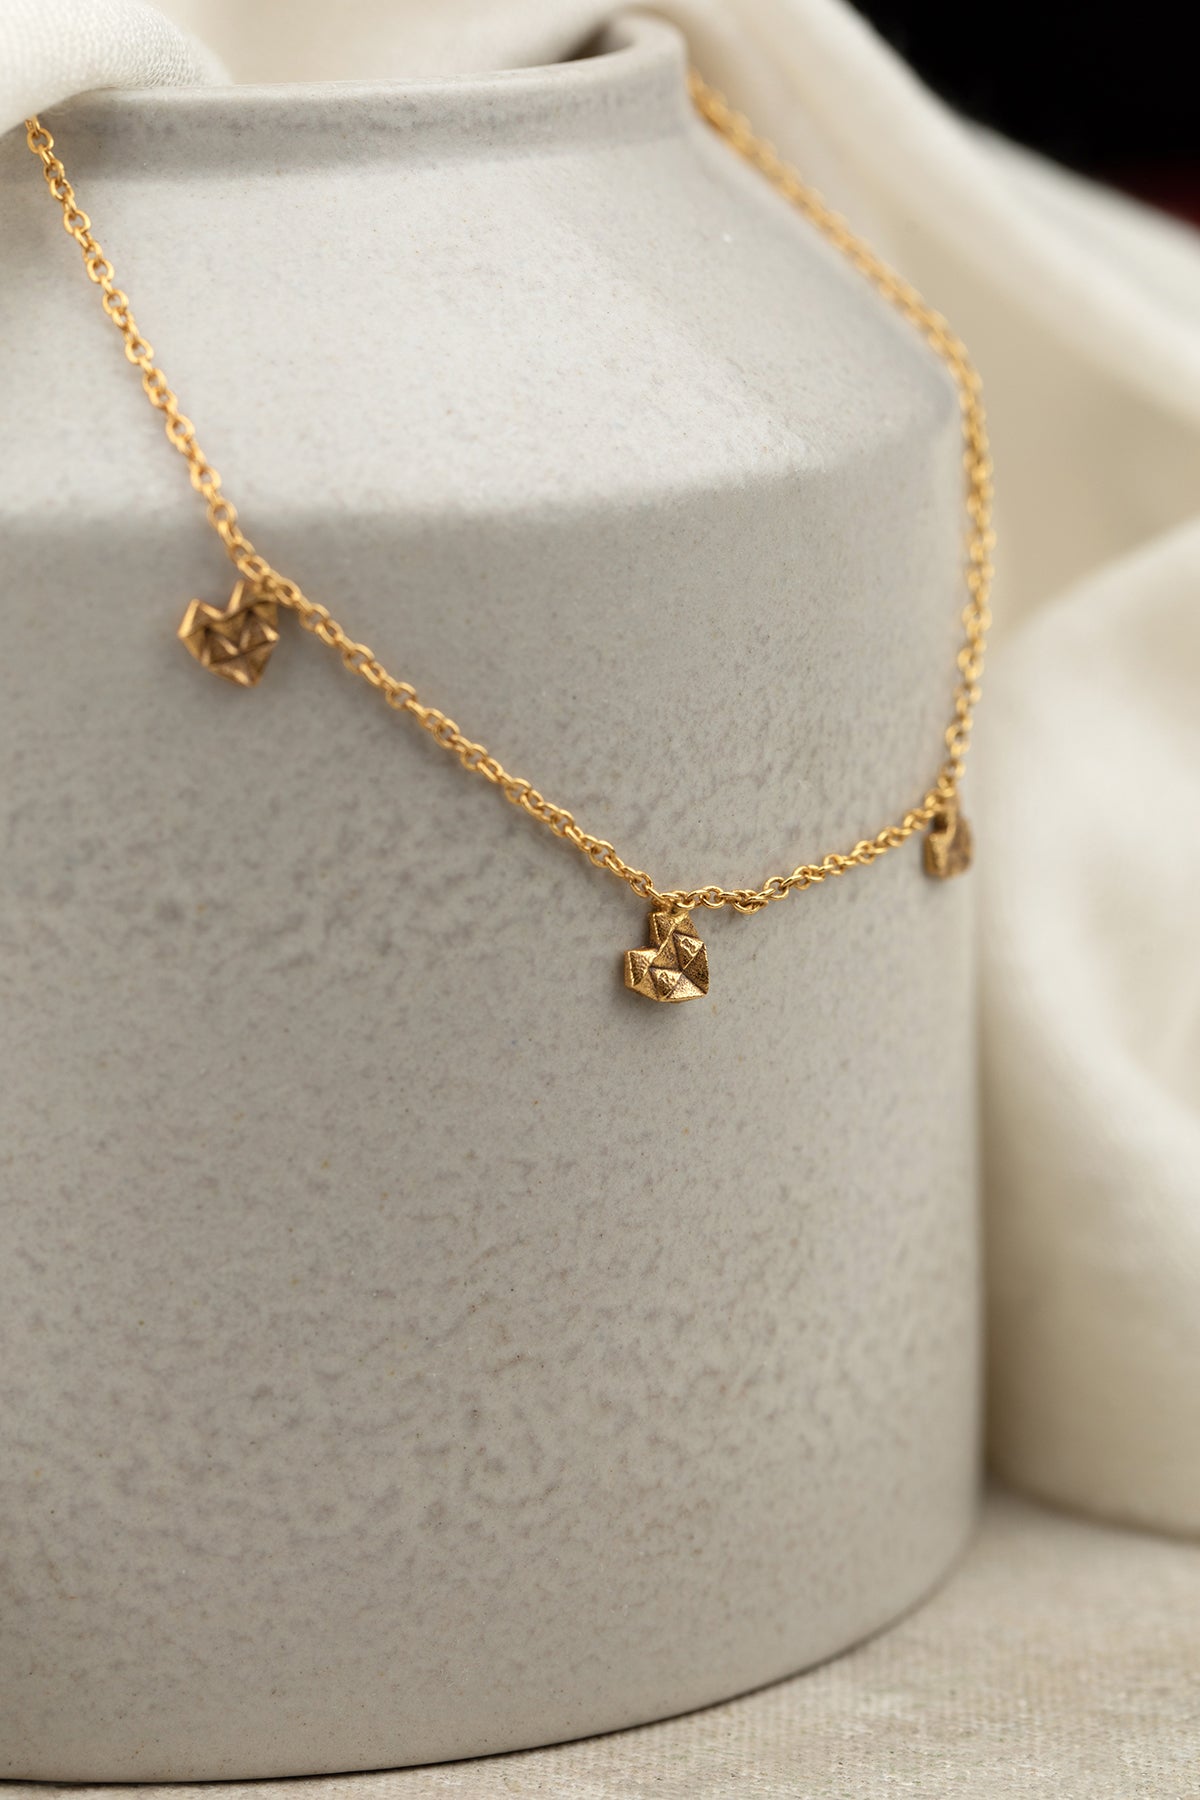 Gazal Necklace 4 gms With Tiny Hearts 1 Micron Gold Plating On Brass - ZEWAR Jewelry